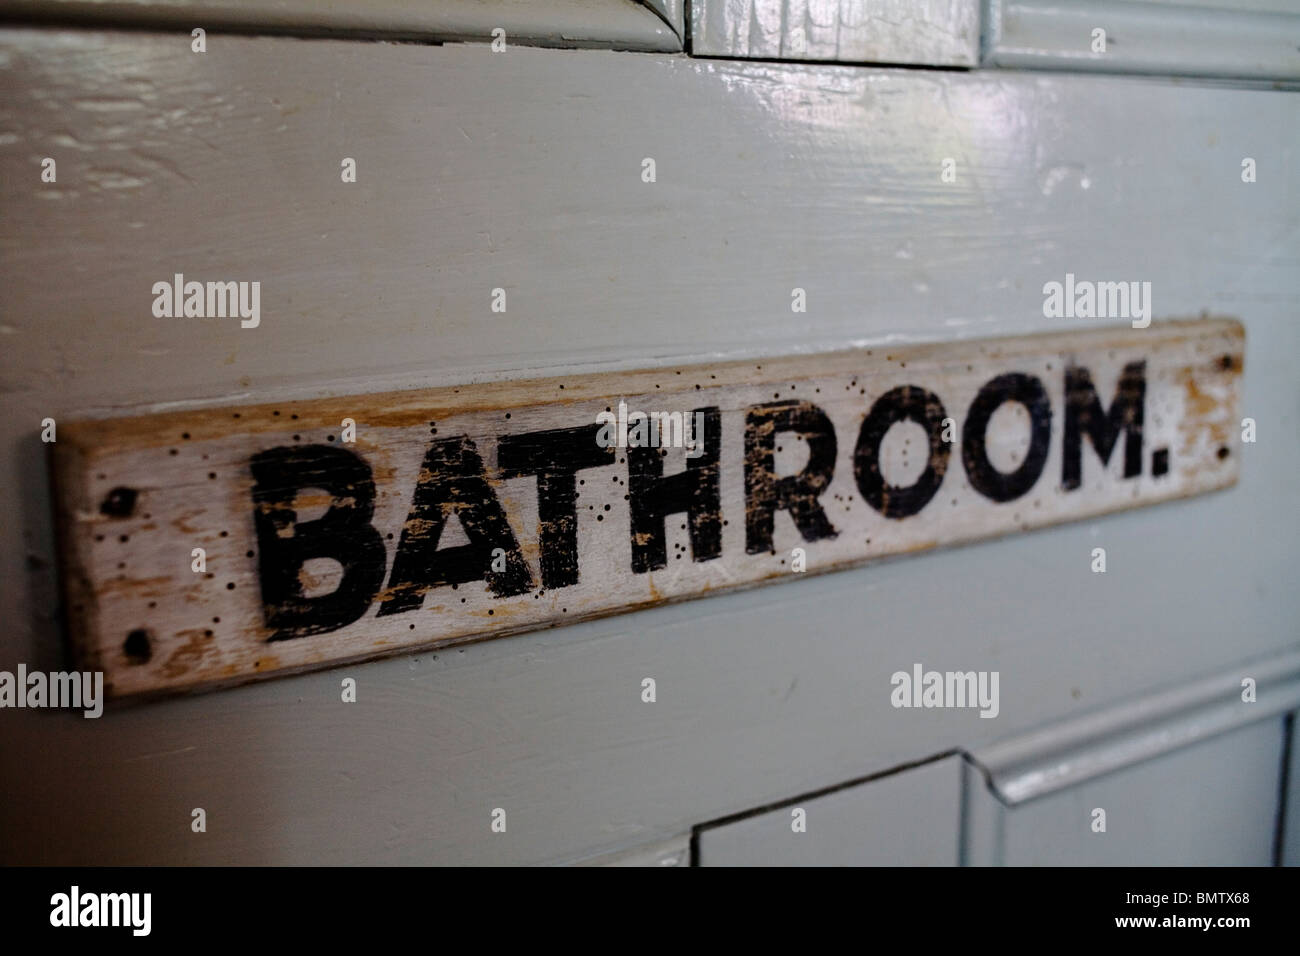 Bathroom door sign. Stock Photo